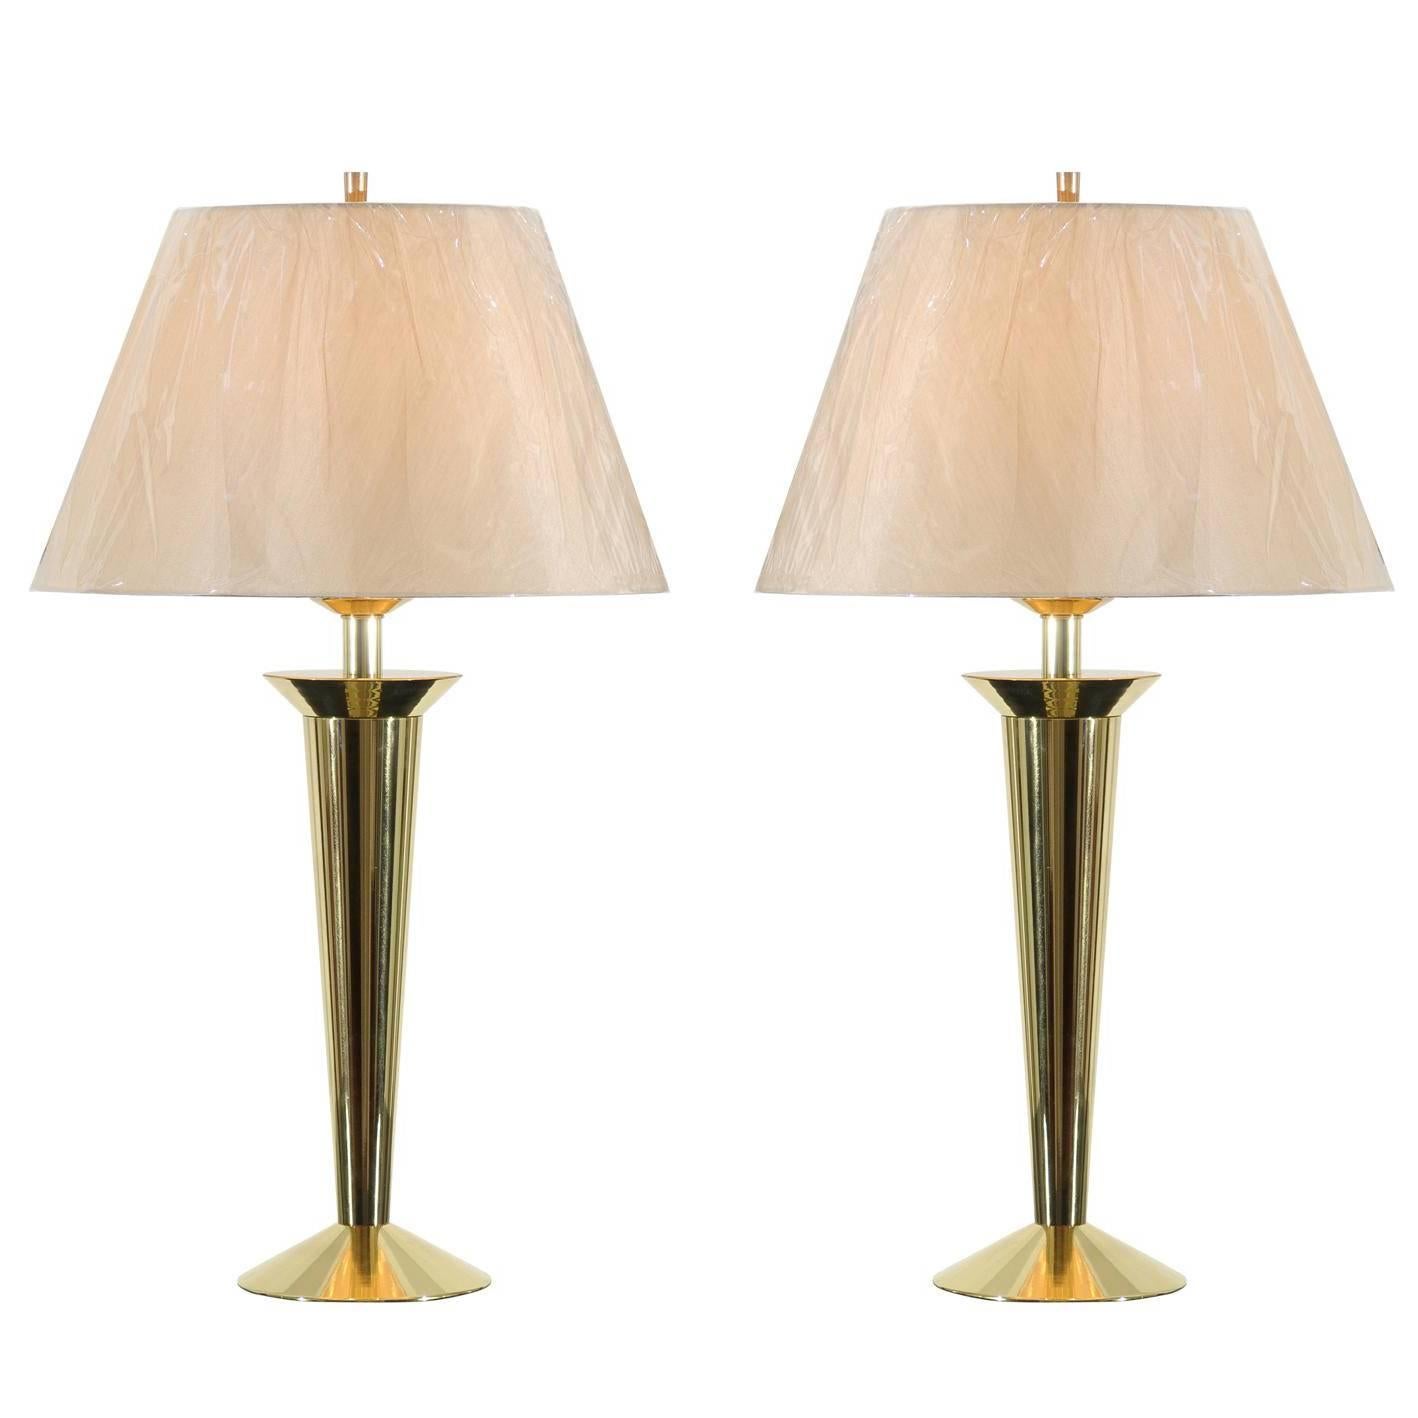 Restored Pair of Sleek Vintage Modern Lamps in Brass